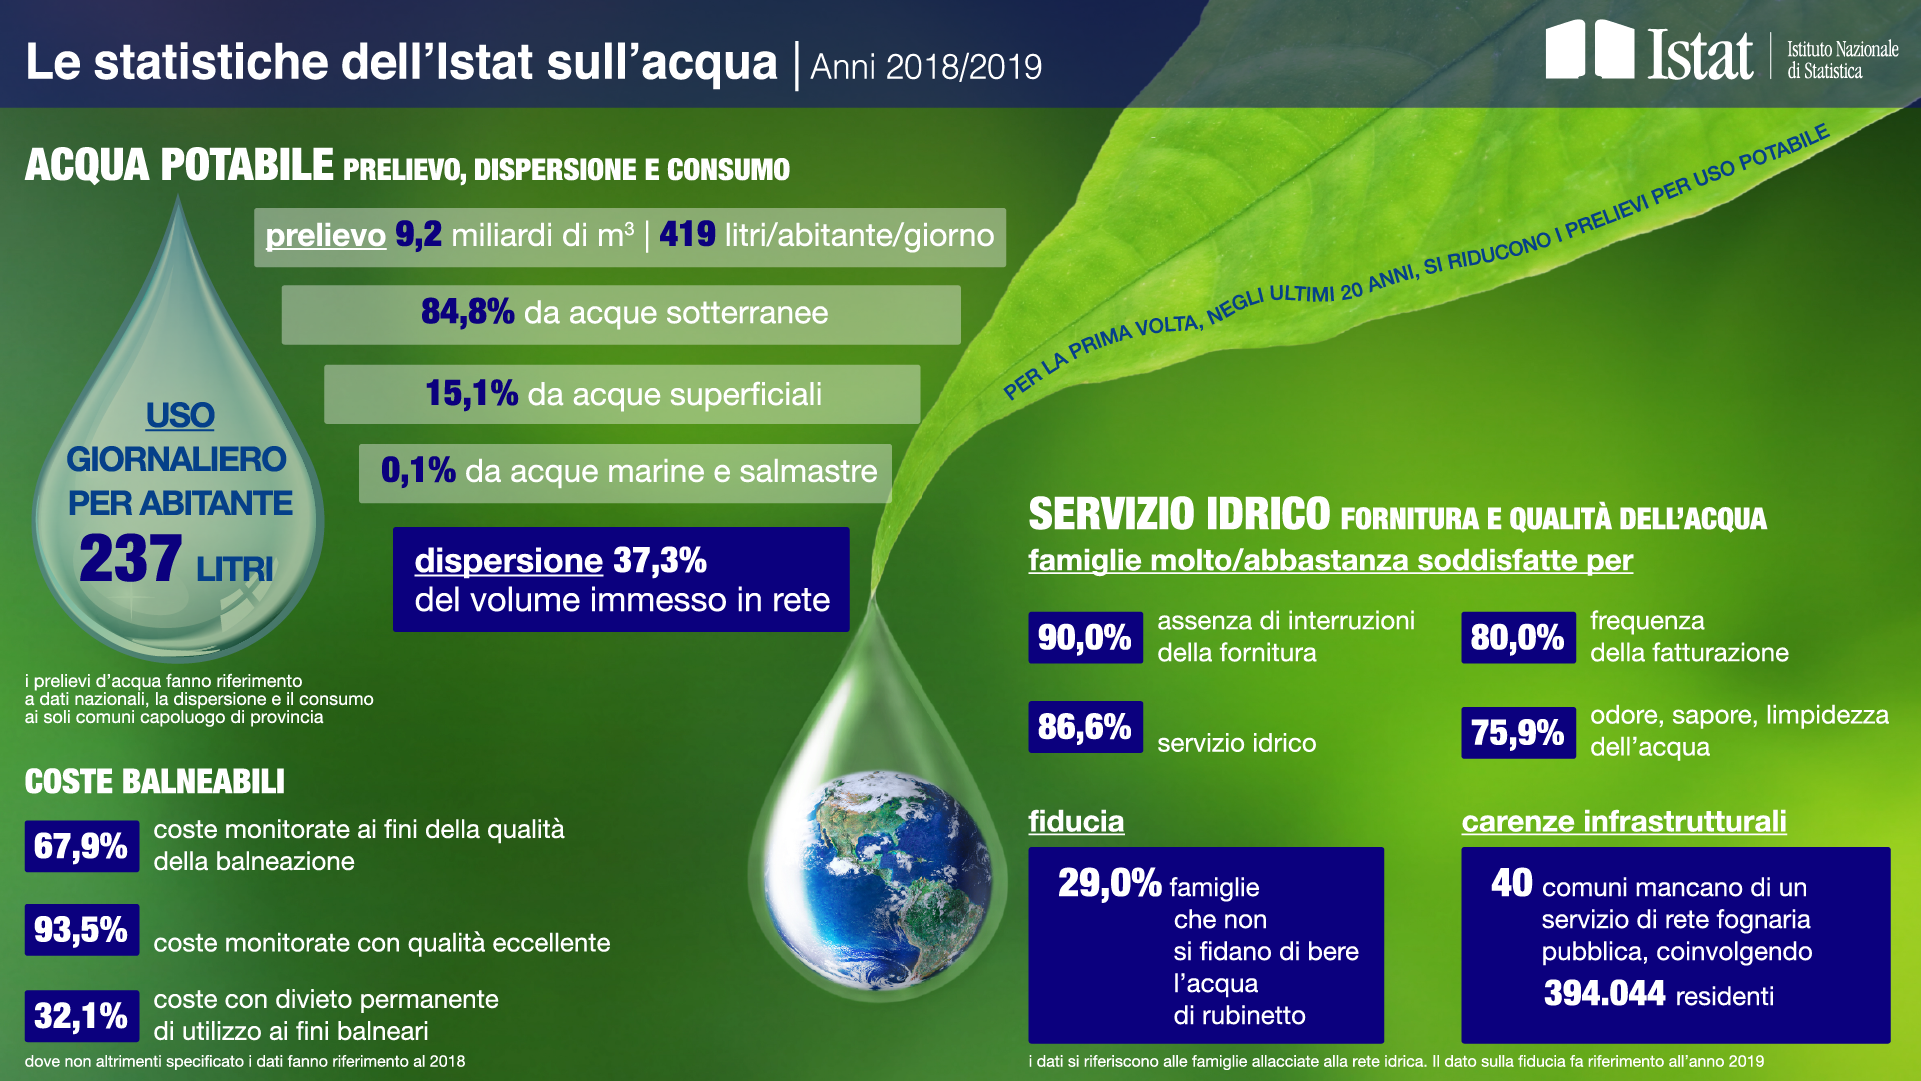 Infografica sulle statistiche dell’Istat sull’acqua